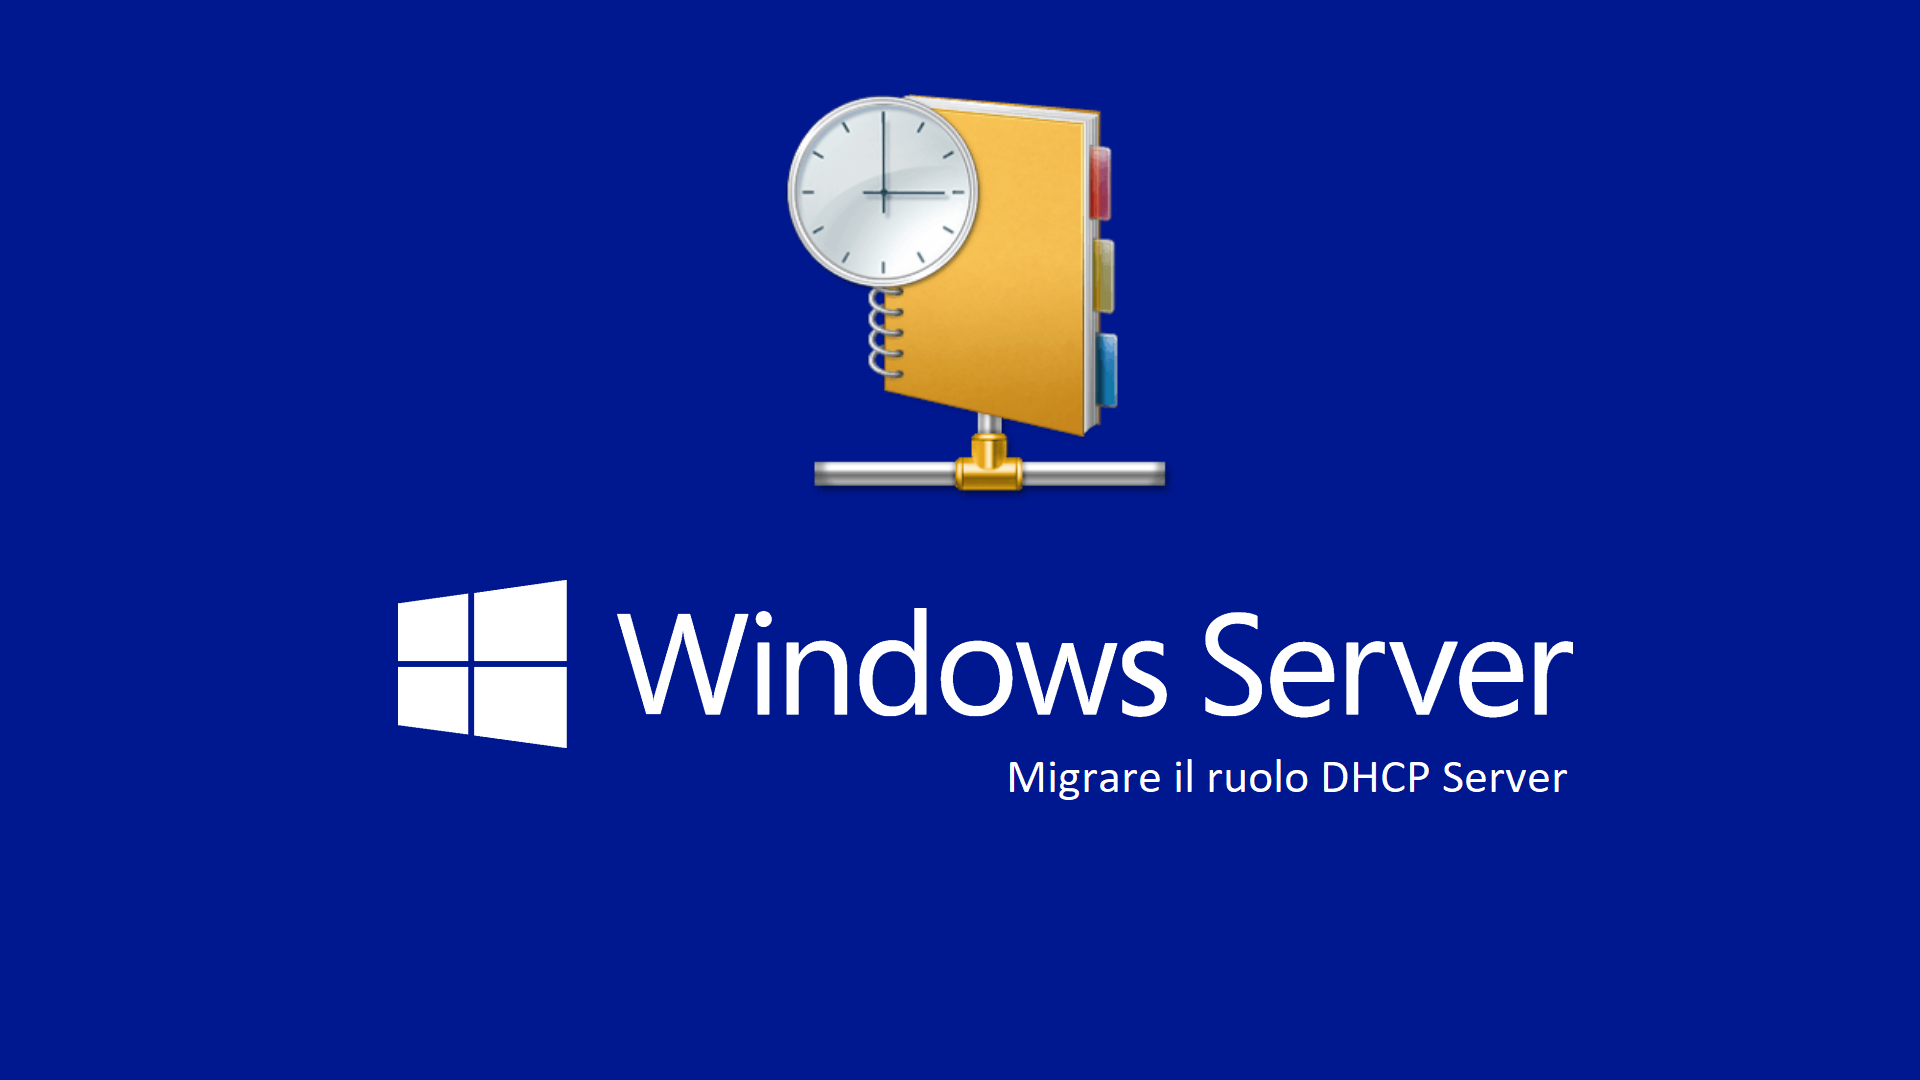 Загрузка виндовс 10. Логотип Windows 10. Запуск виндовс. Запуск Windows 10. Server dumps